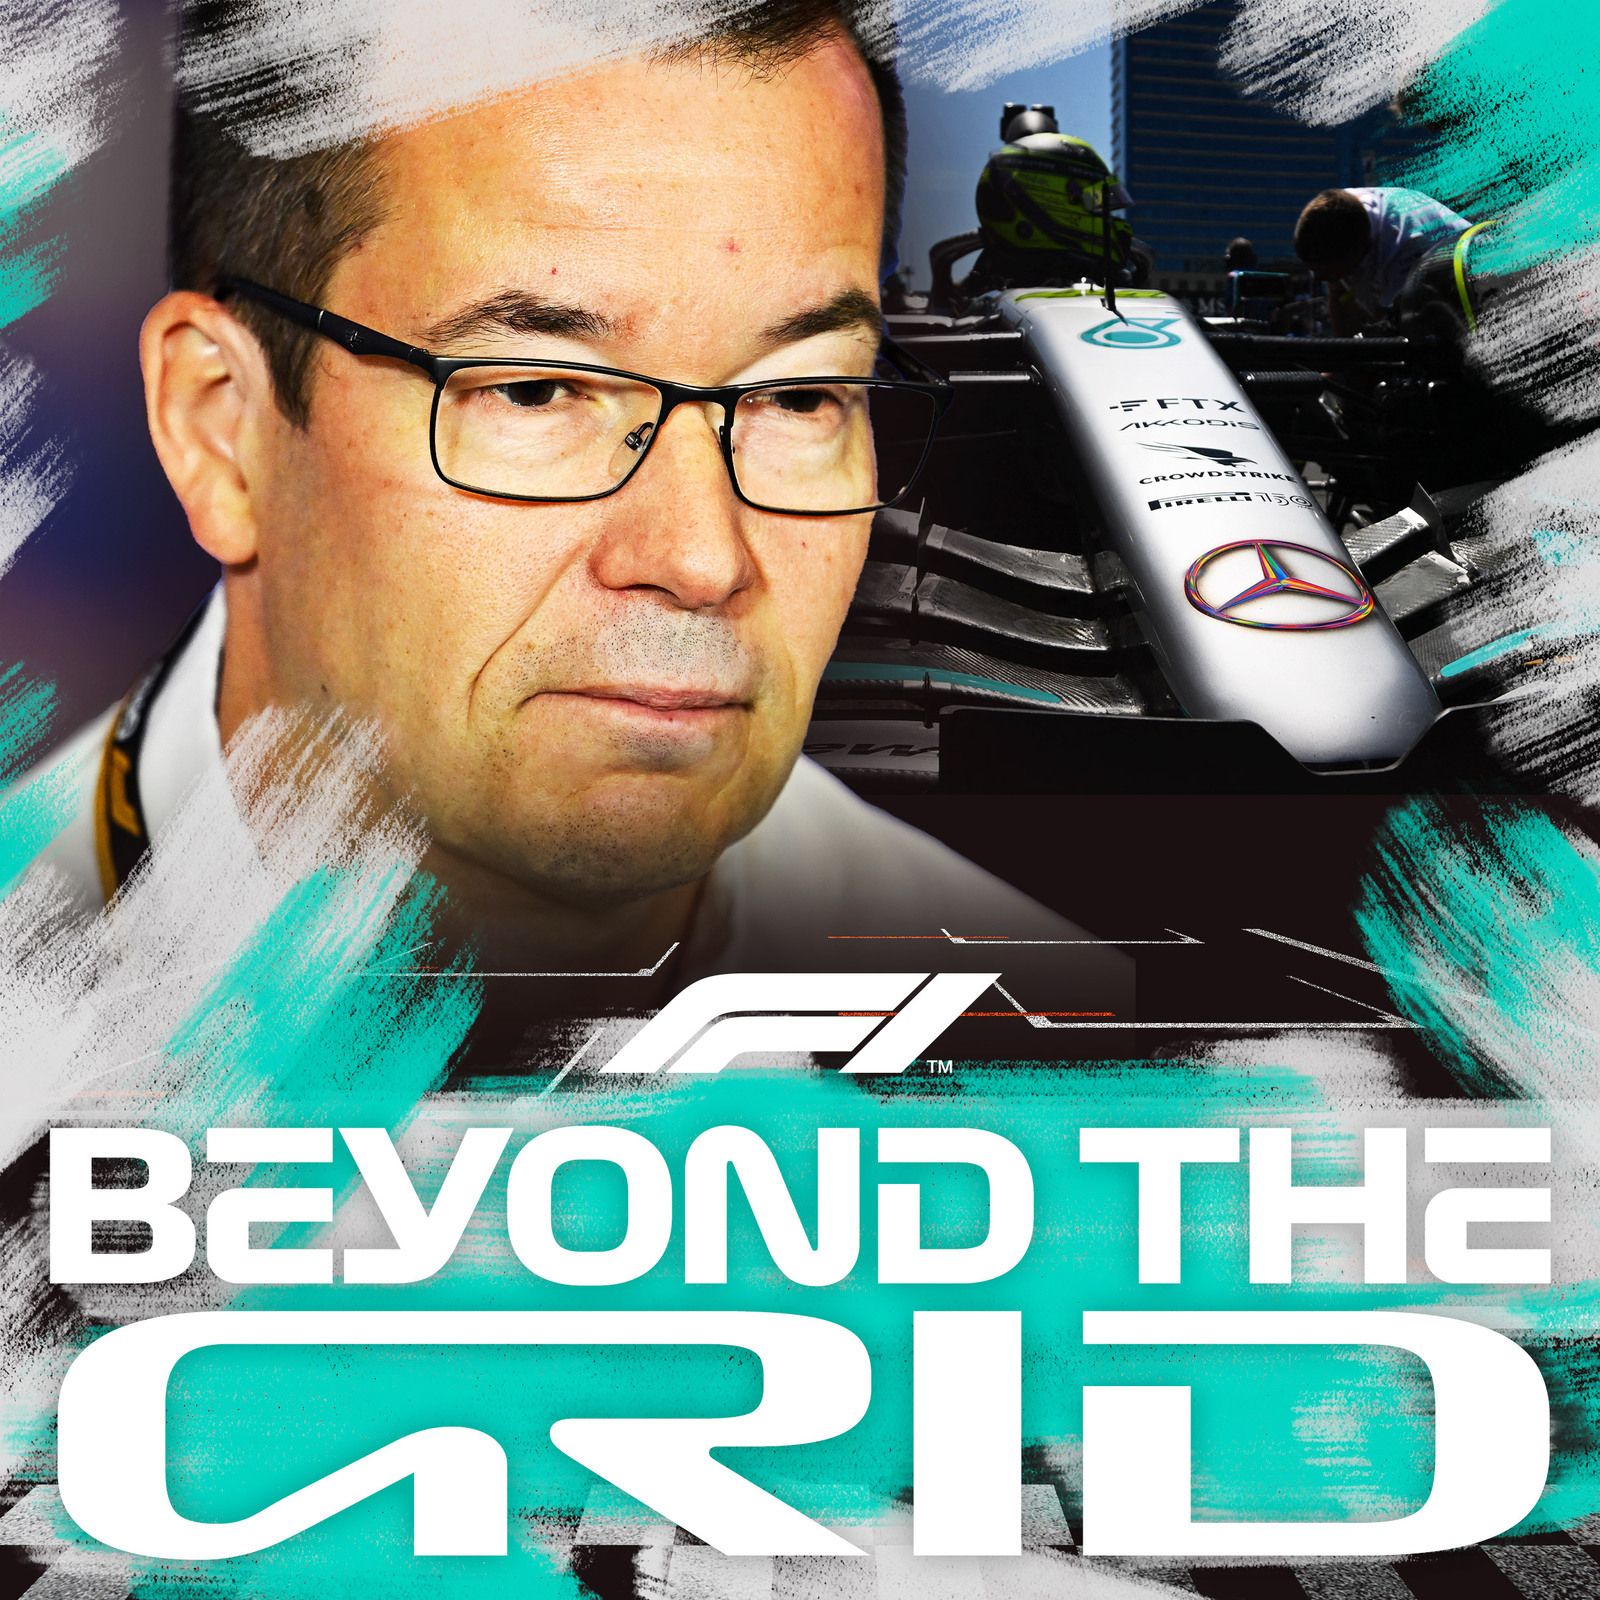 Mike Elliott: the 2022 ‘mistake’ making Mercedes stronger